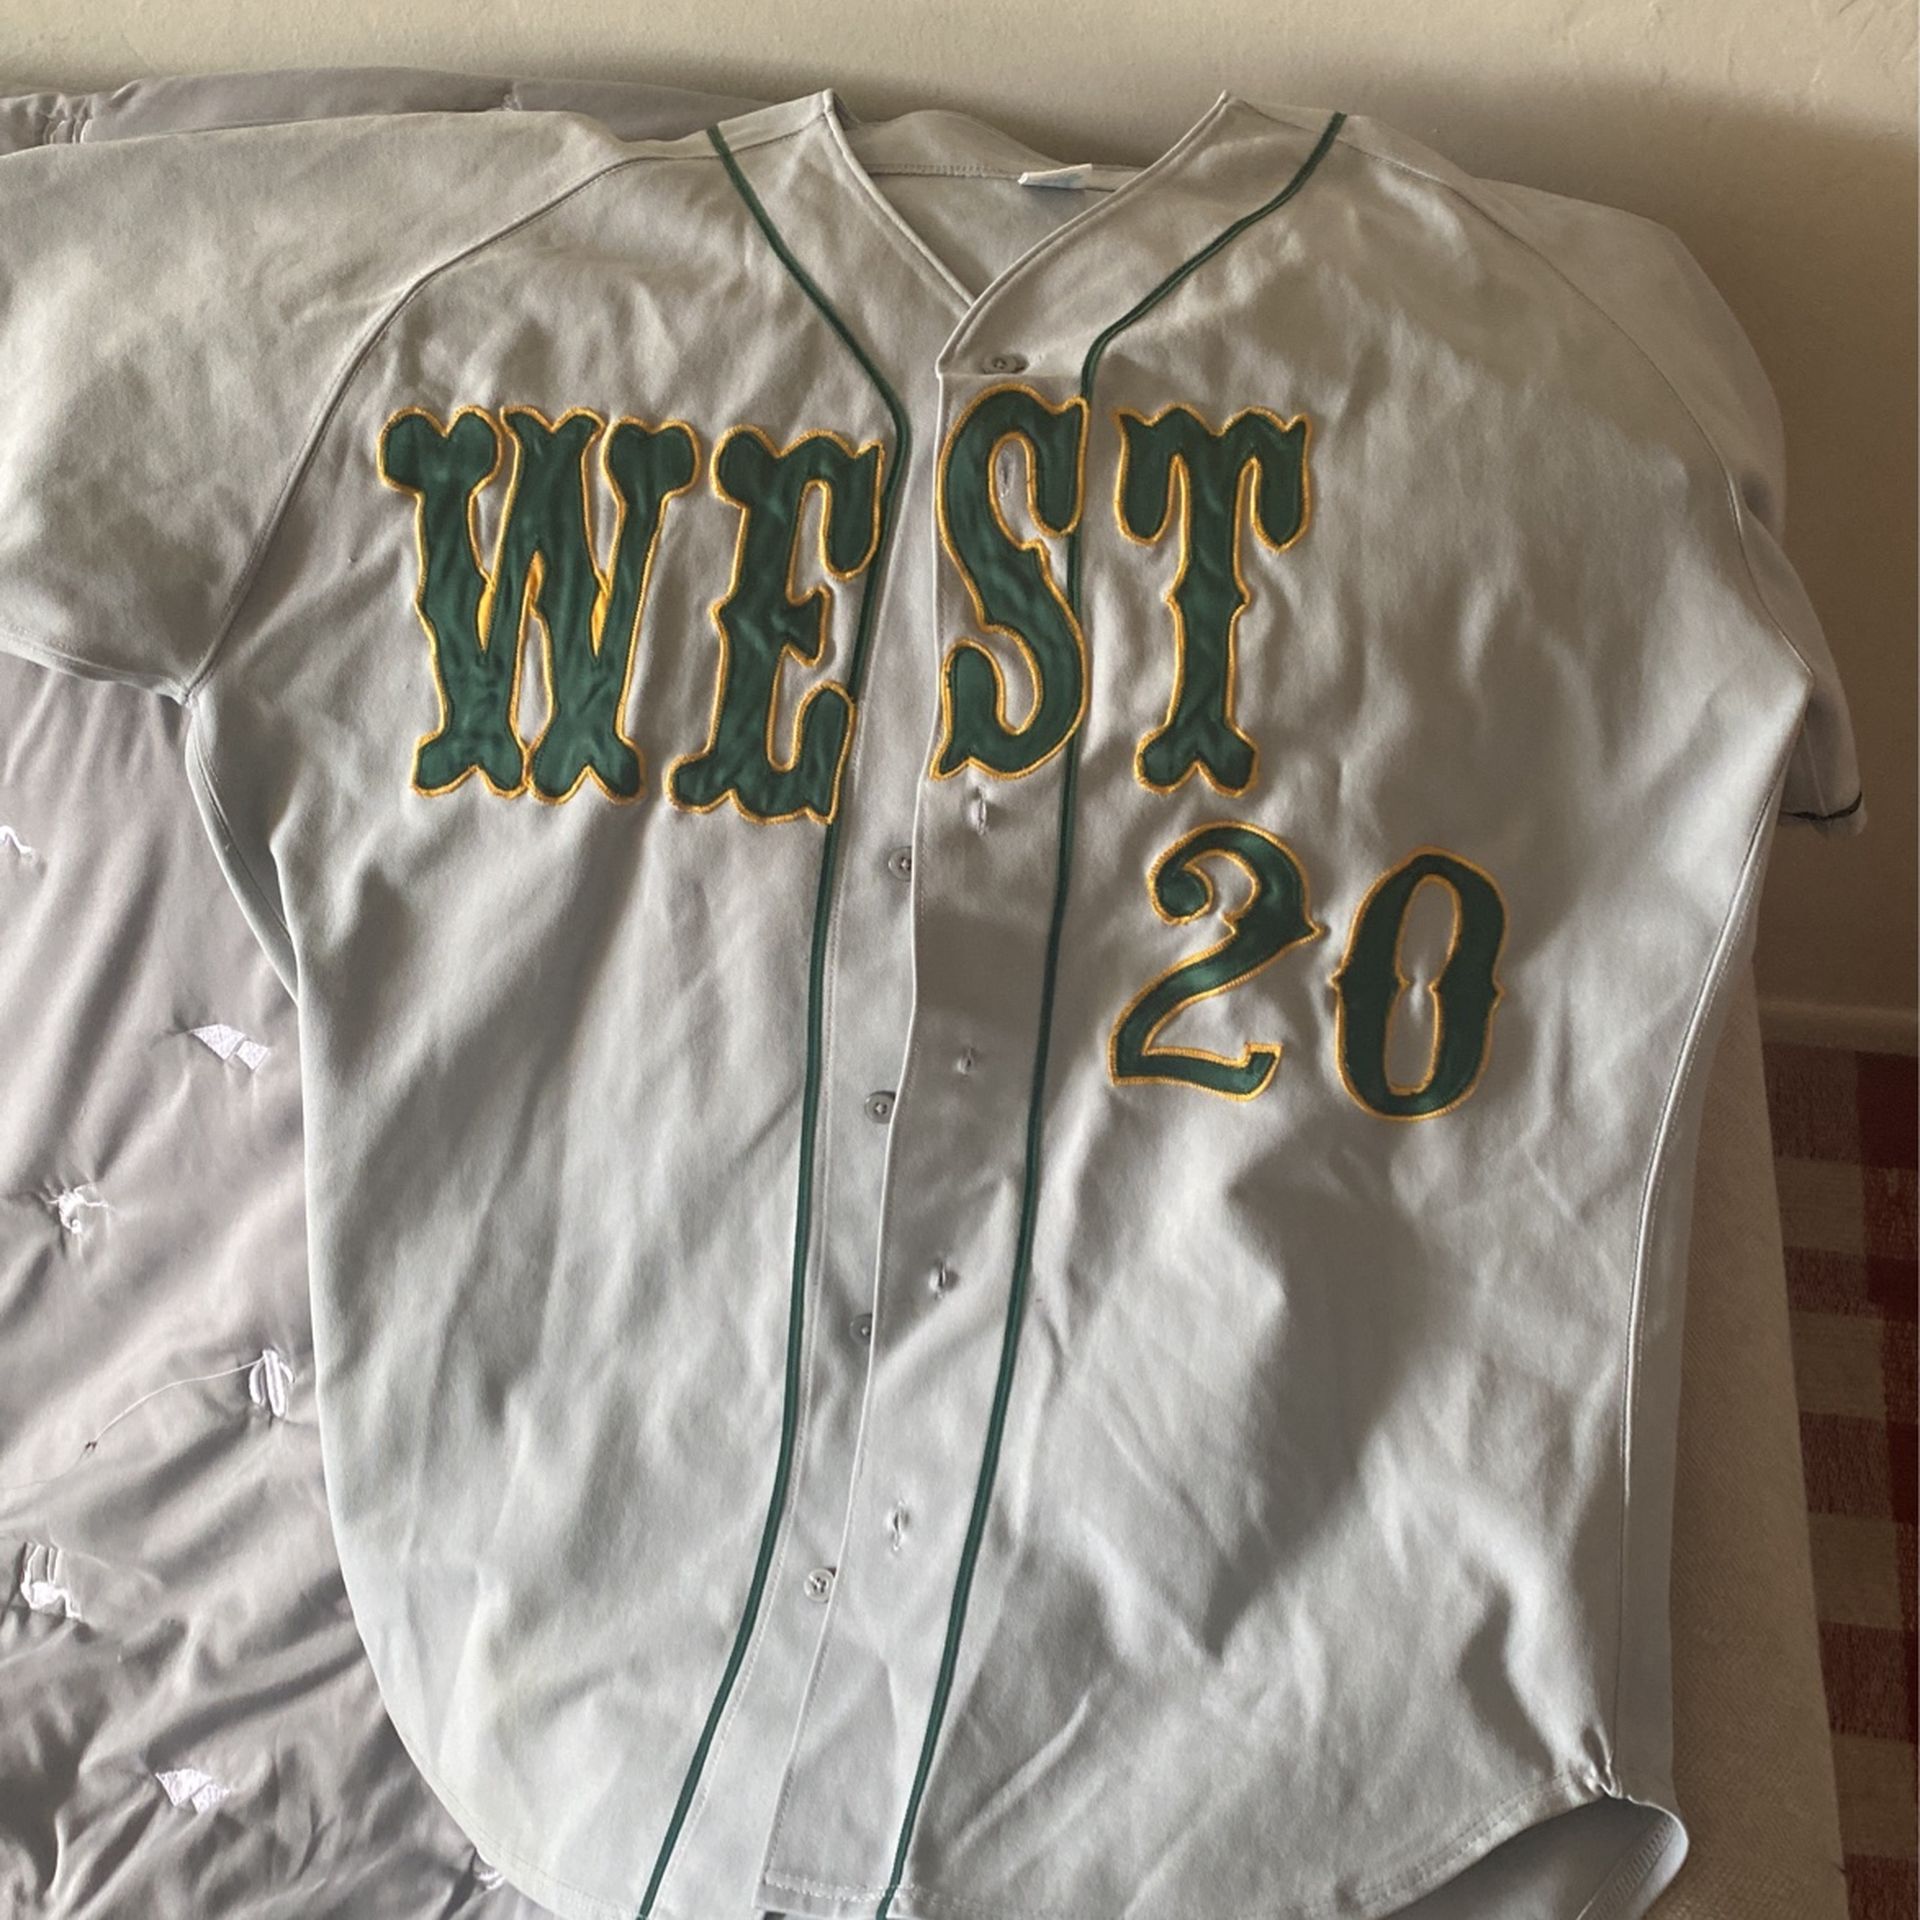 West high school baseball jersey